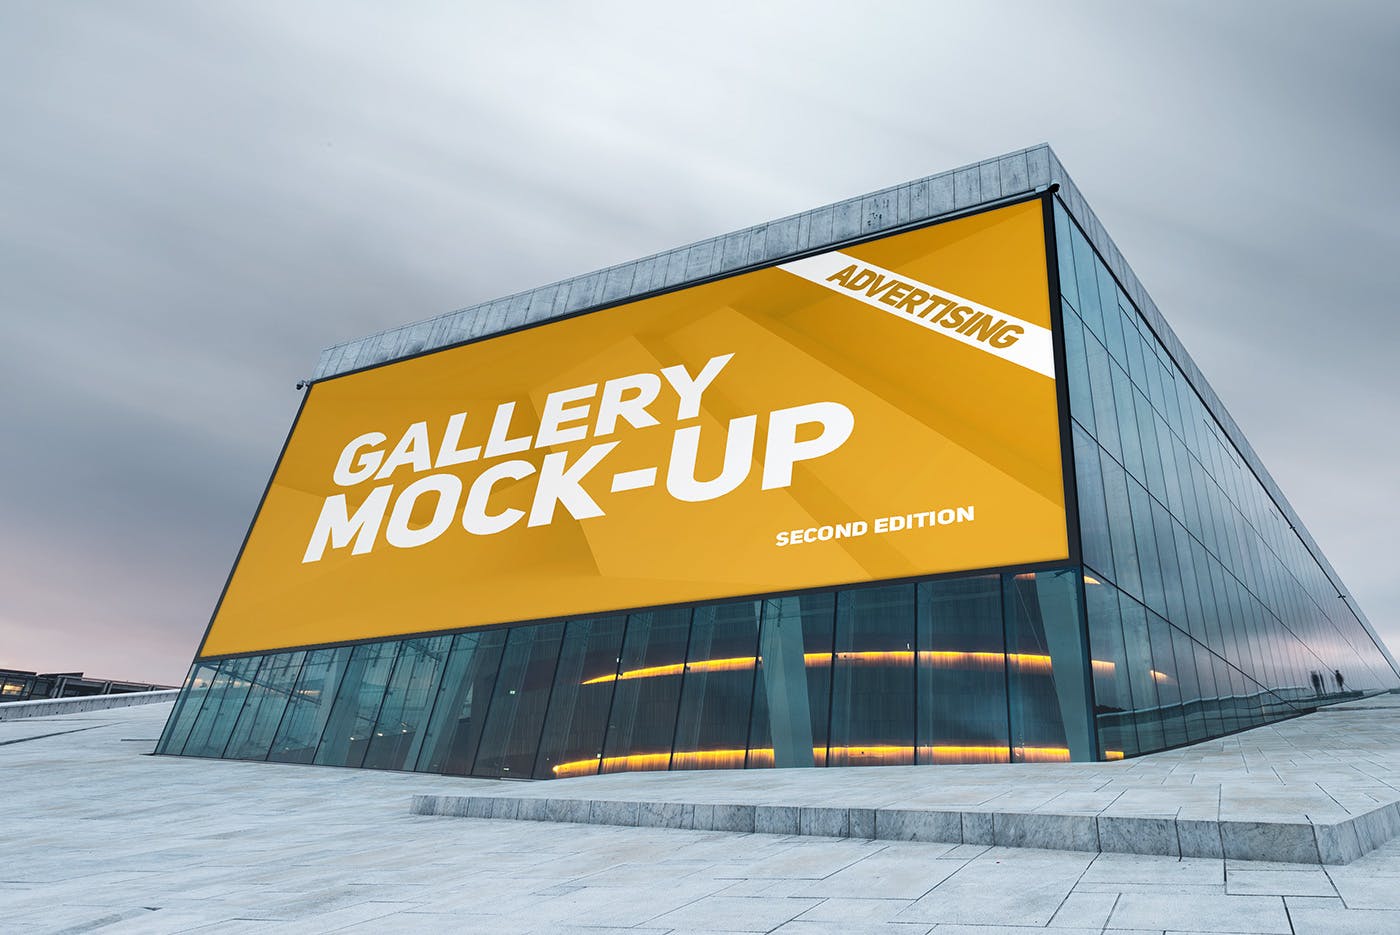 展厅画廊巨幅海报设计图样机蚂蚁素材精选模板v3 Gallery Poster Mockup v.3插图(10)